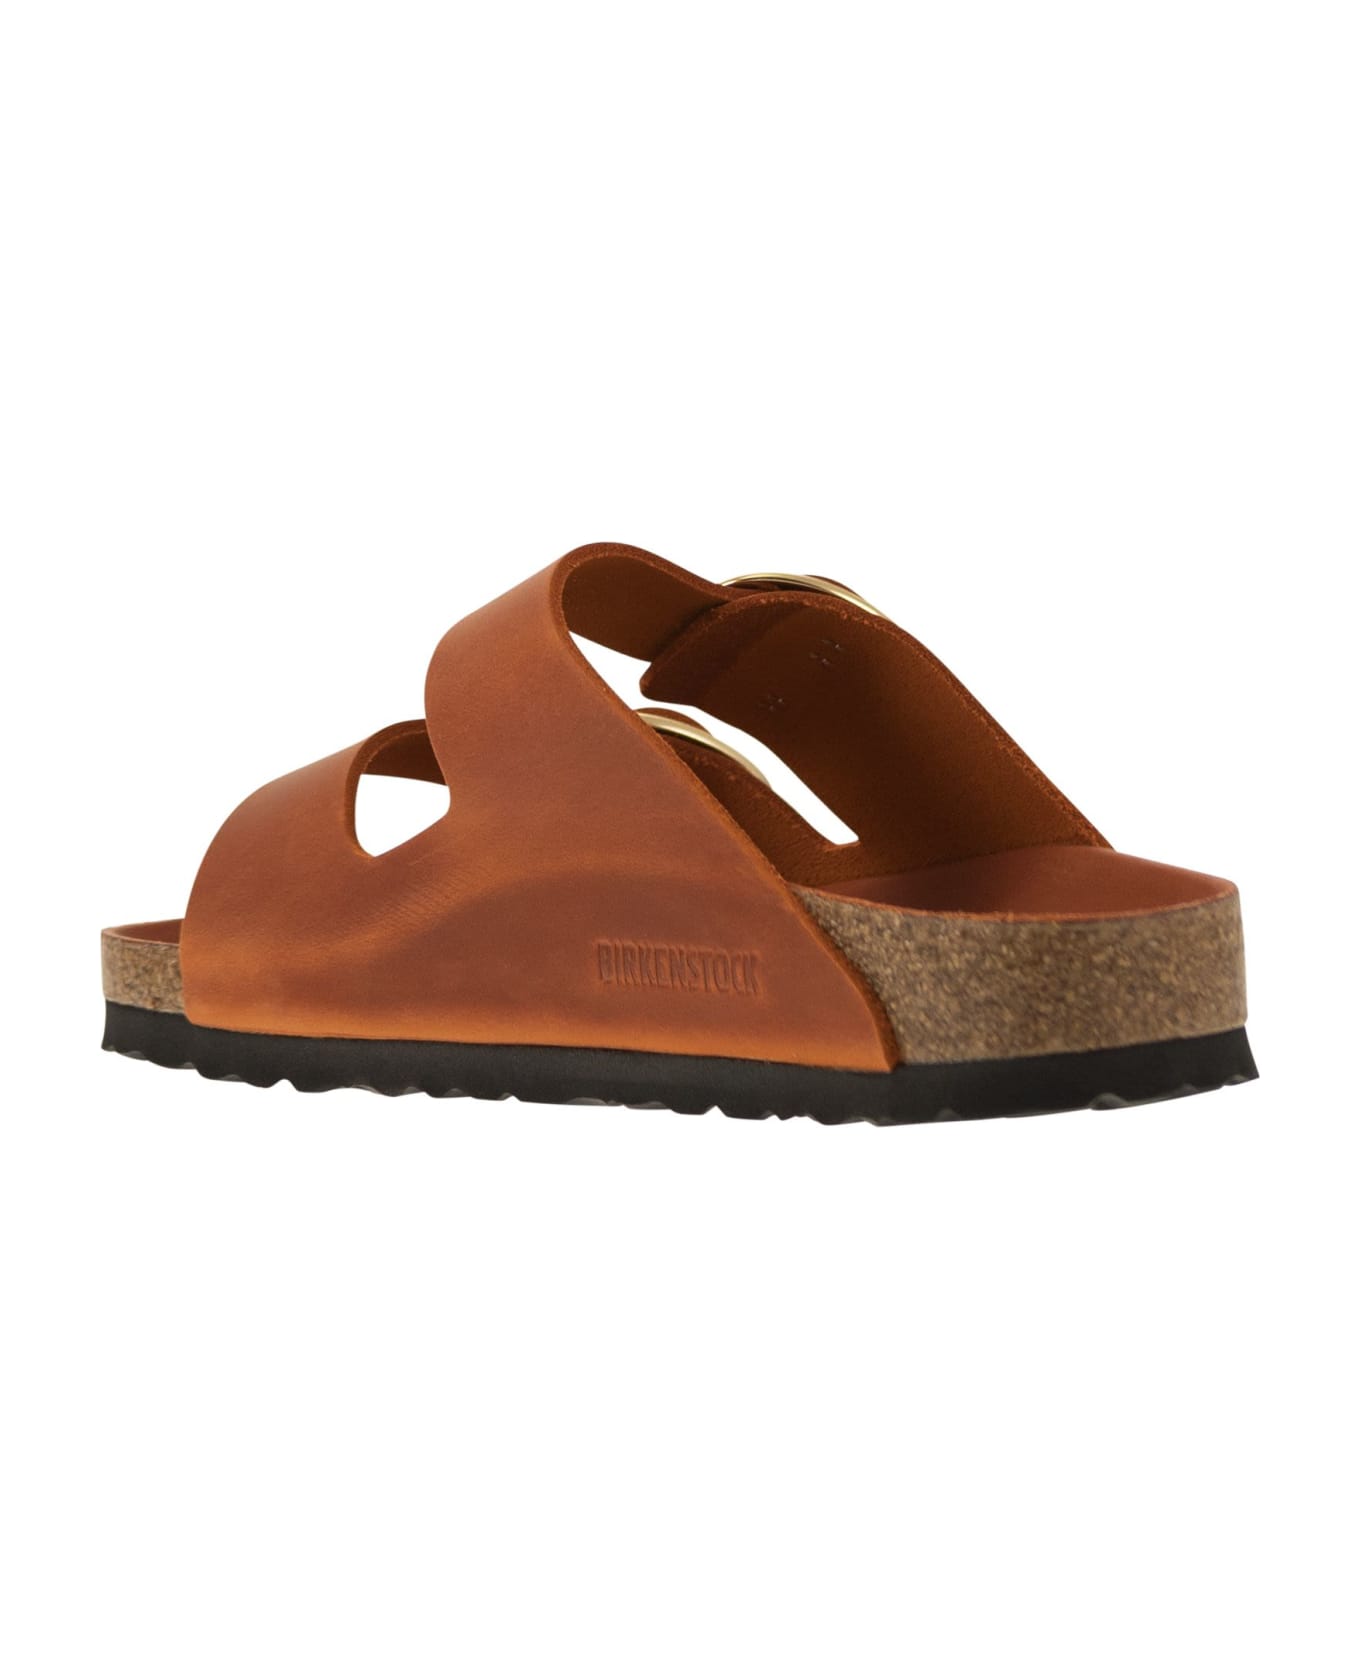 Birkenstock Arizona - Slipper Sandal - Orange